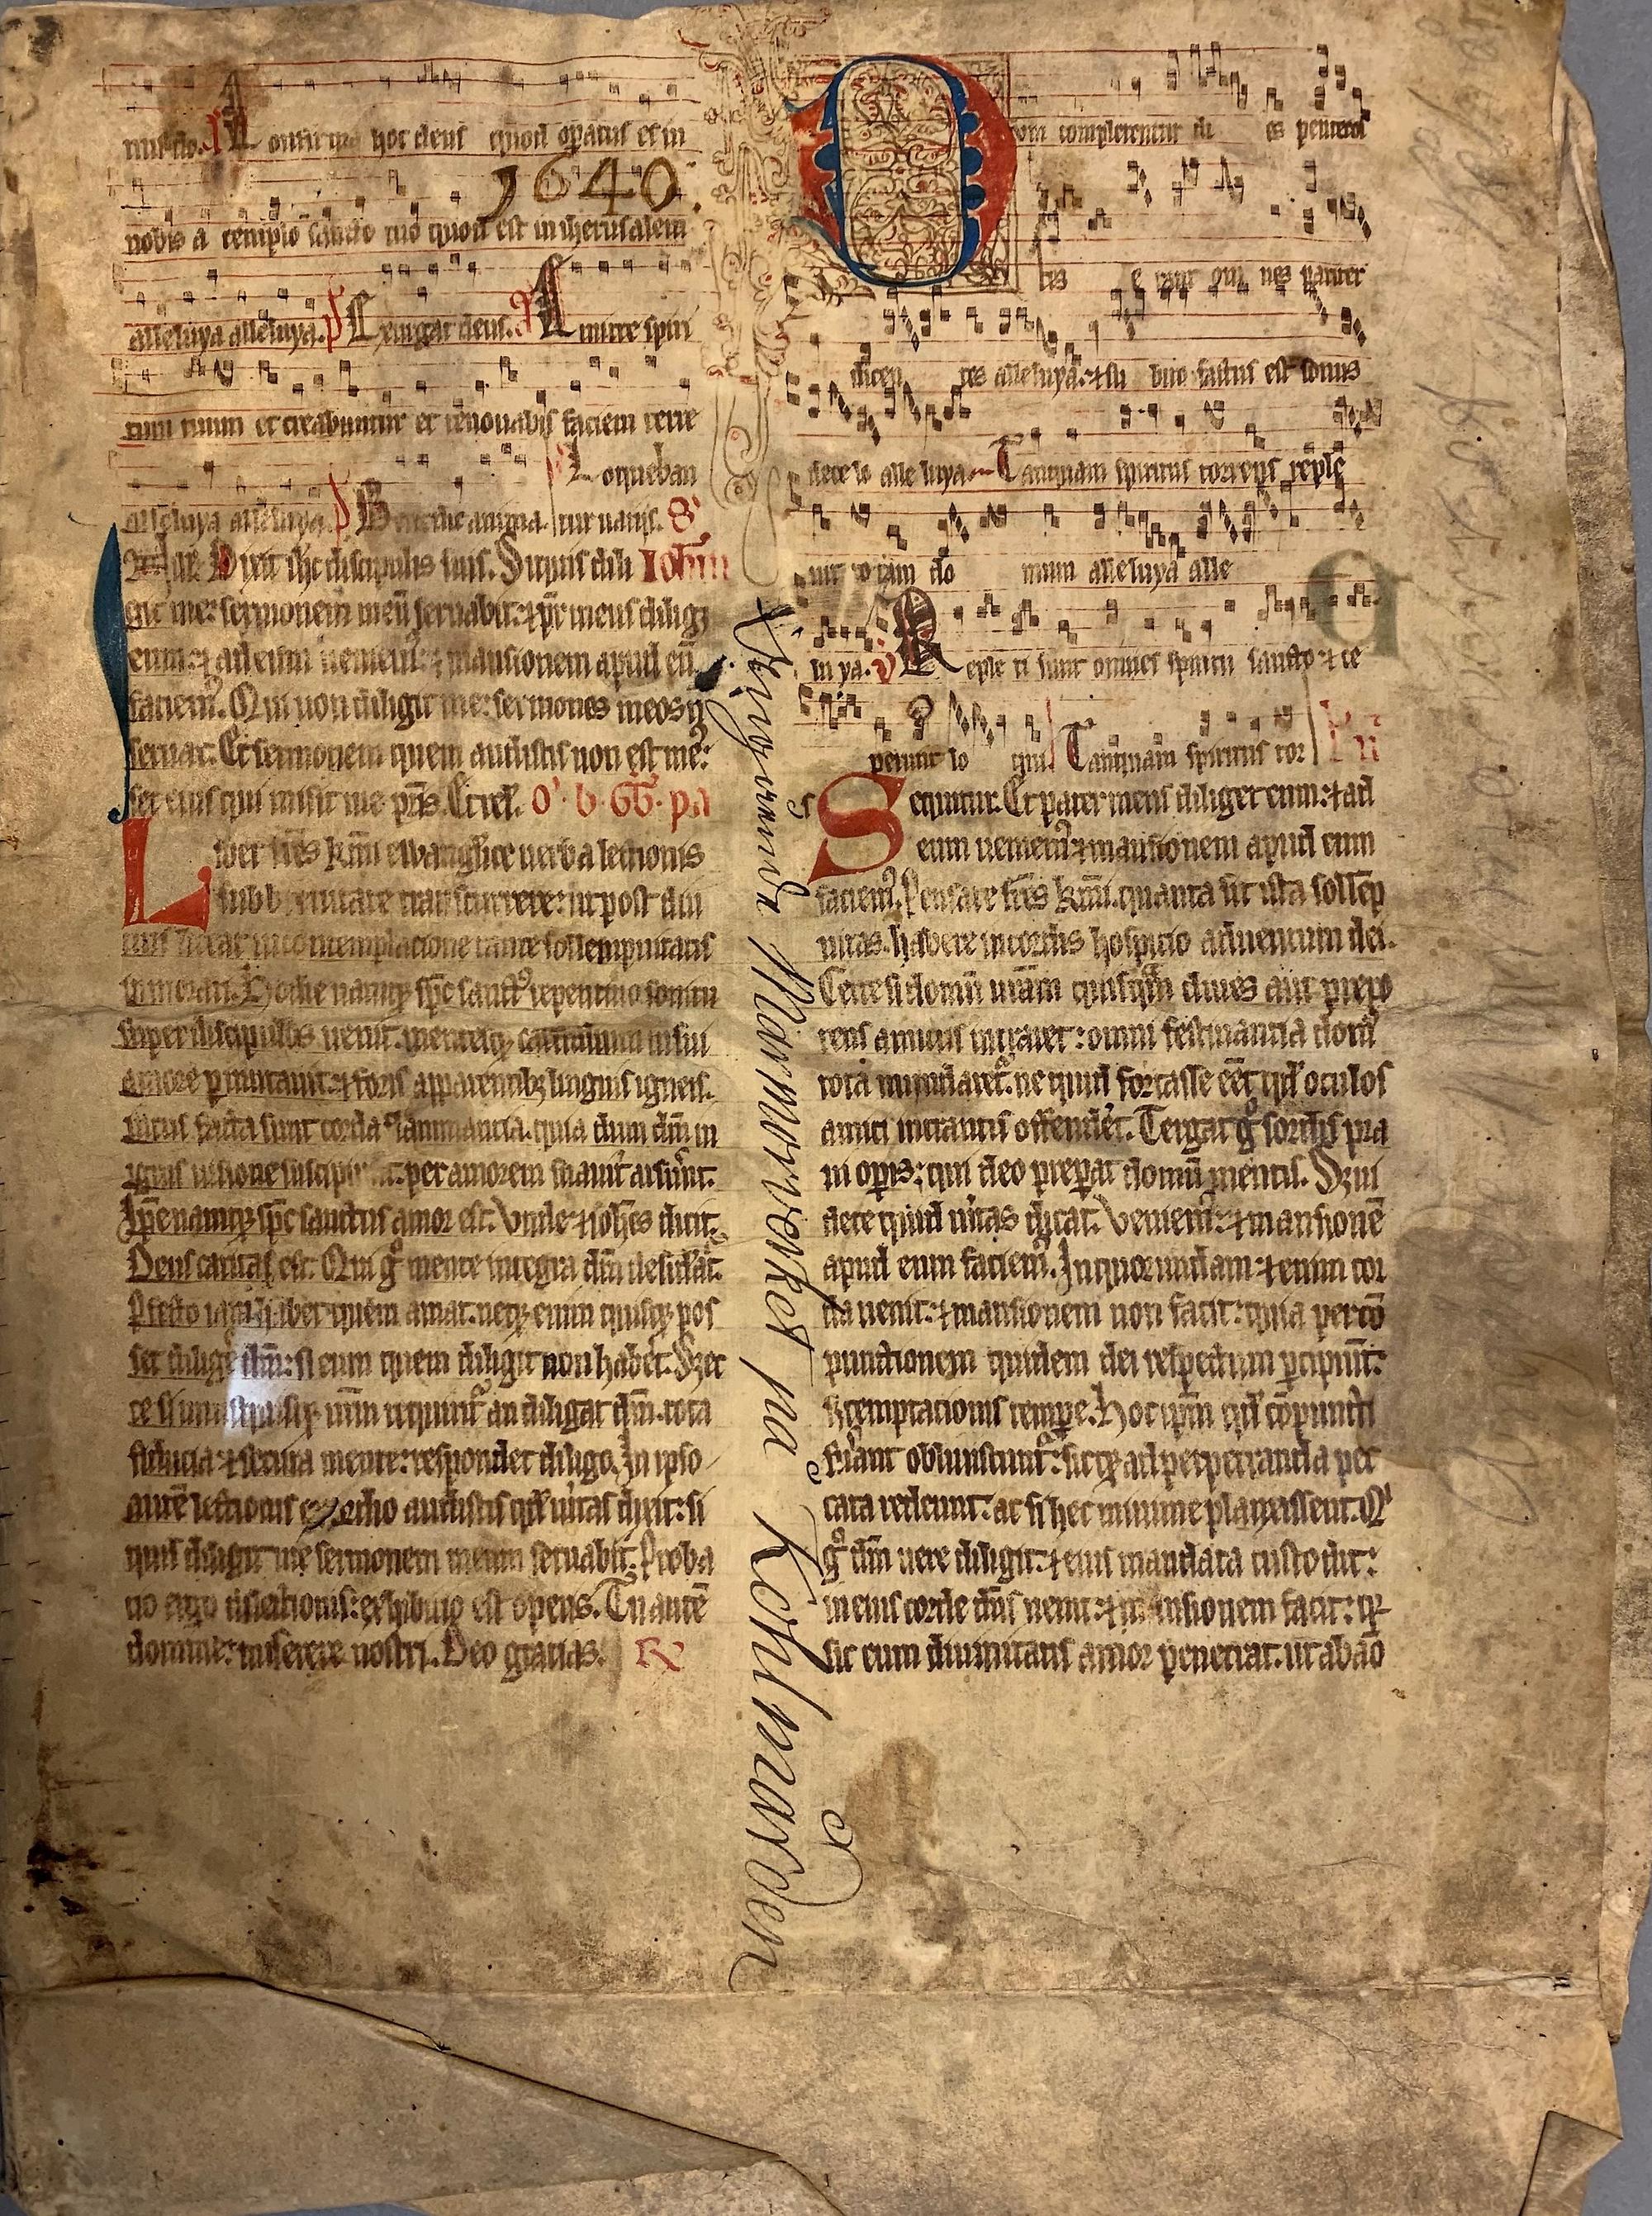 Pergamentblad från medeltiden med noter och text. Senare påskrift "Marmorverket på Kolmården" längs en vikt rygg.